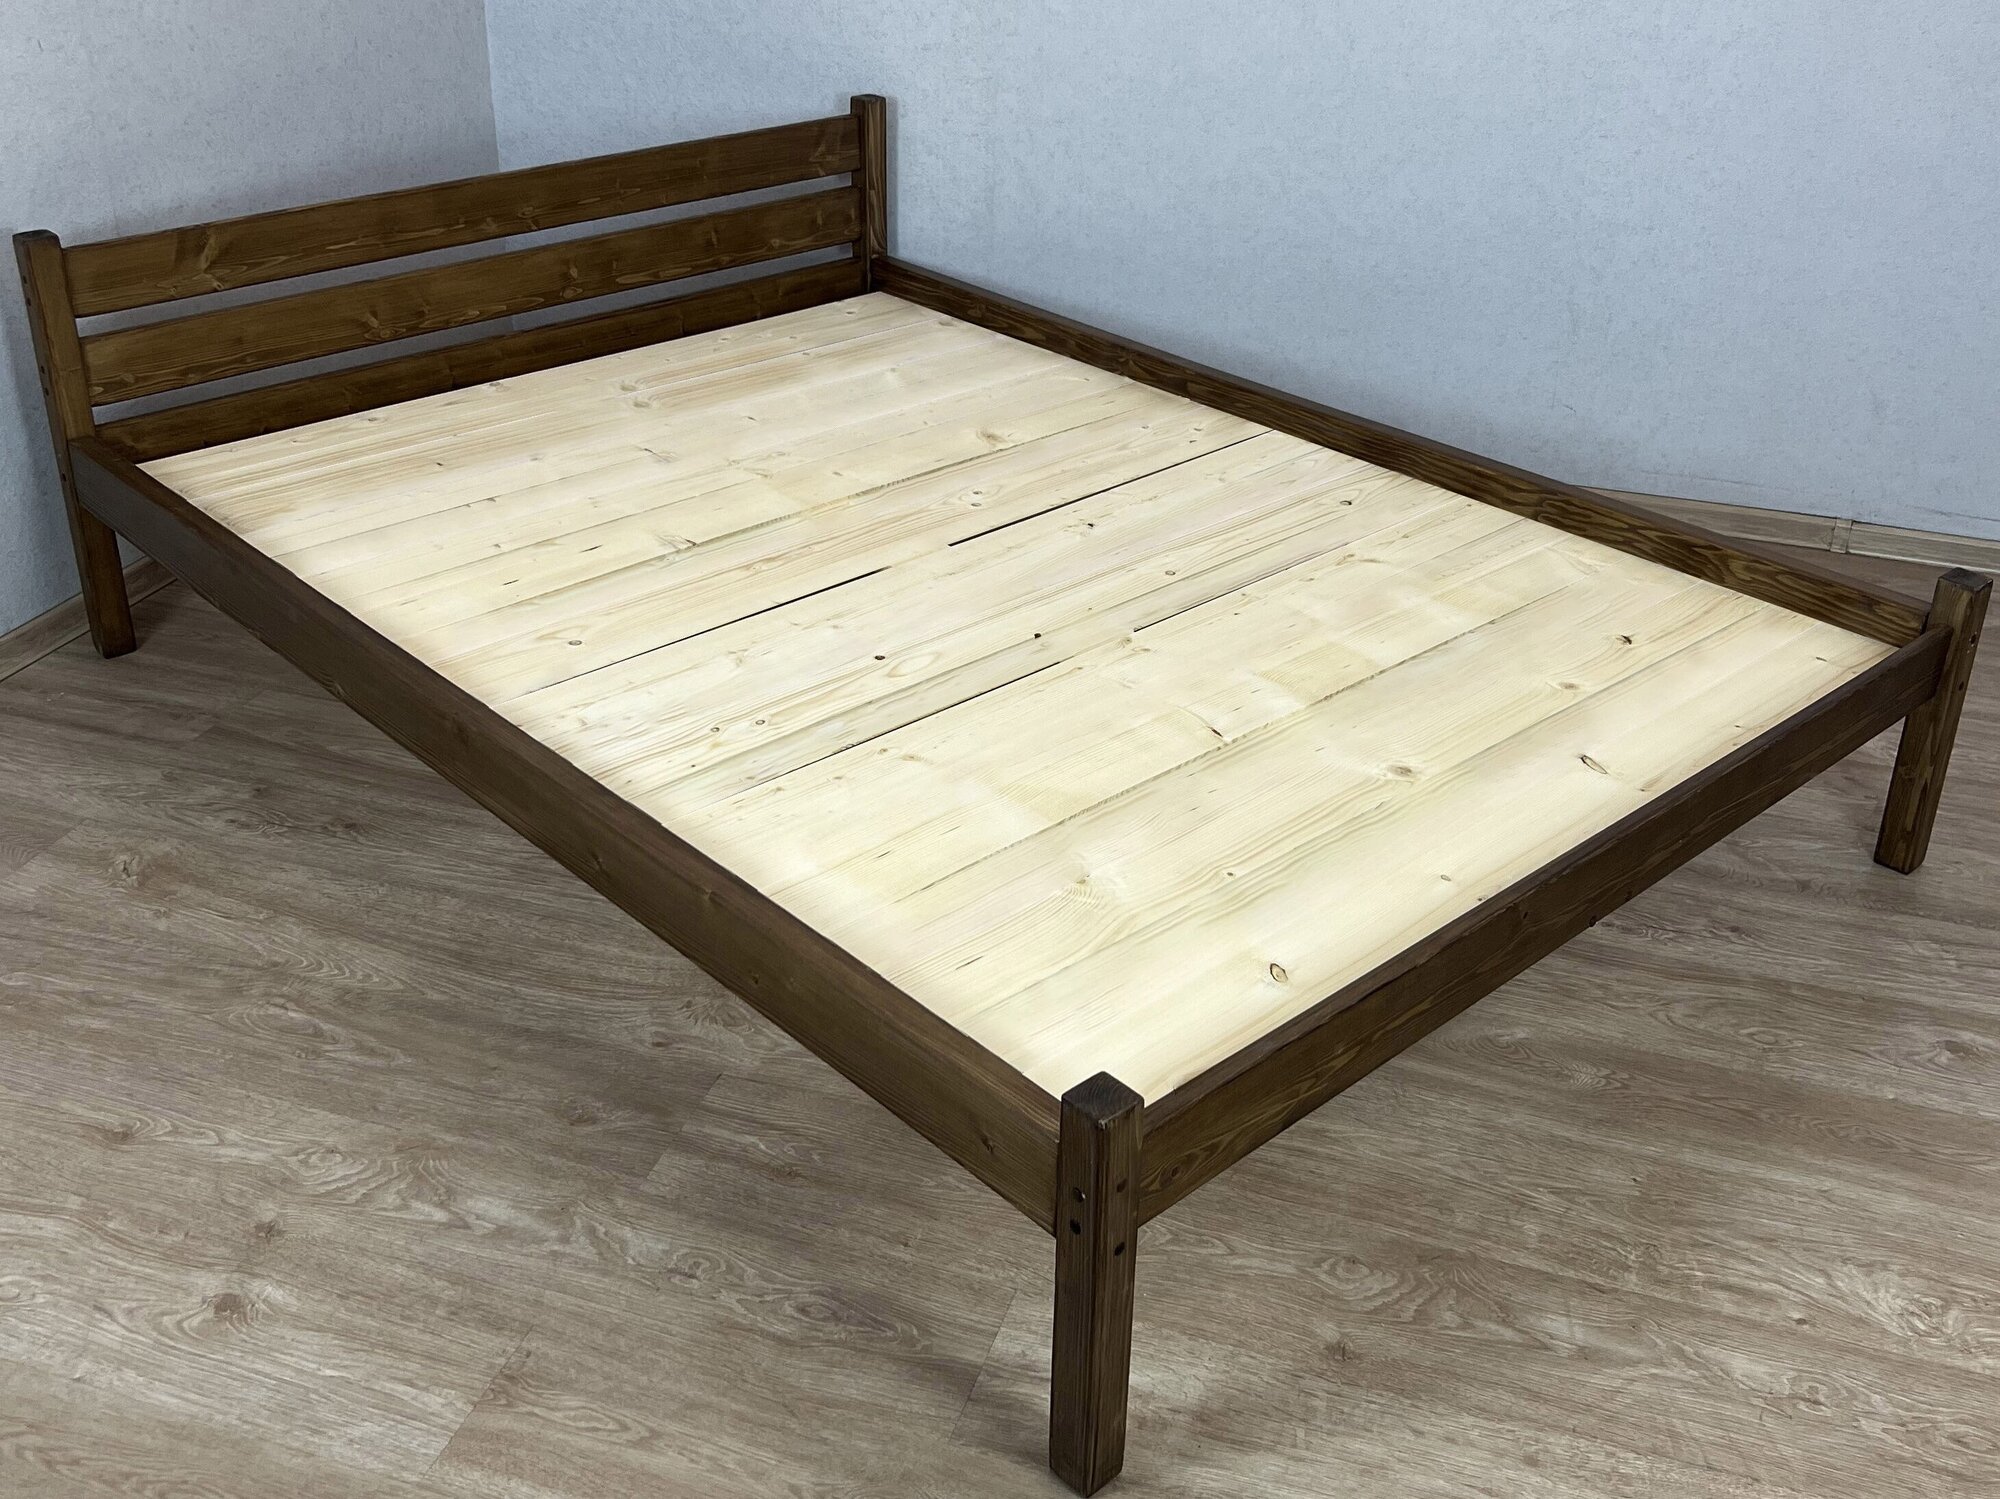 Кровать двуспальная Классика из массива сосны со сплошным основанием, 200х180 см (габариты 210х190), цвет темный дуб